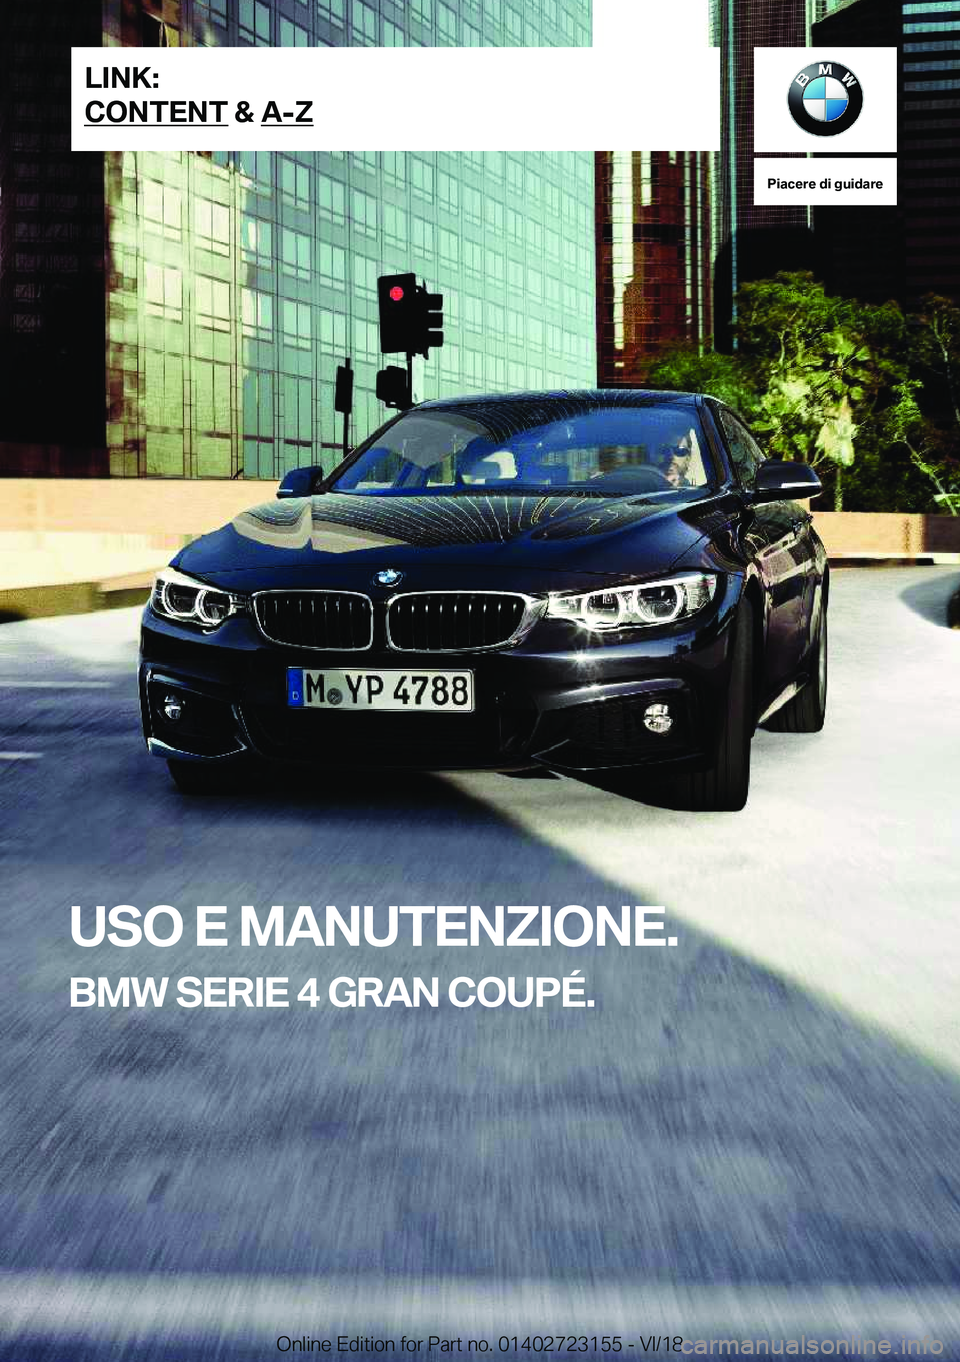 BMW 4 SERIES COUPE 2019  Libretti Di Uso E manutenzione (in Italian) �P�i�a�c�e�r�e��d�i��g�u�i�d�a�r�e
�U�S�O��E��M�A�N�U�T�E�N�;�I�O�N�E�.
�B�M�W��S�E�R�I�E��4��G�R�A�N��C�O�U�P�